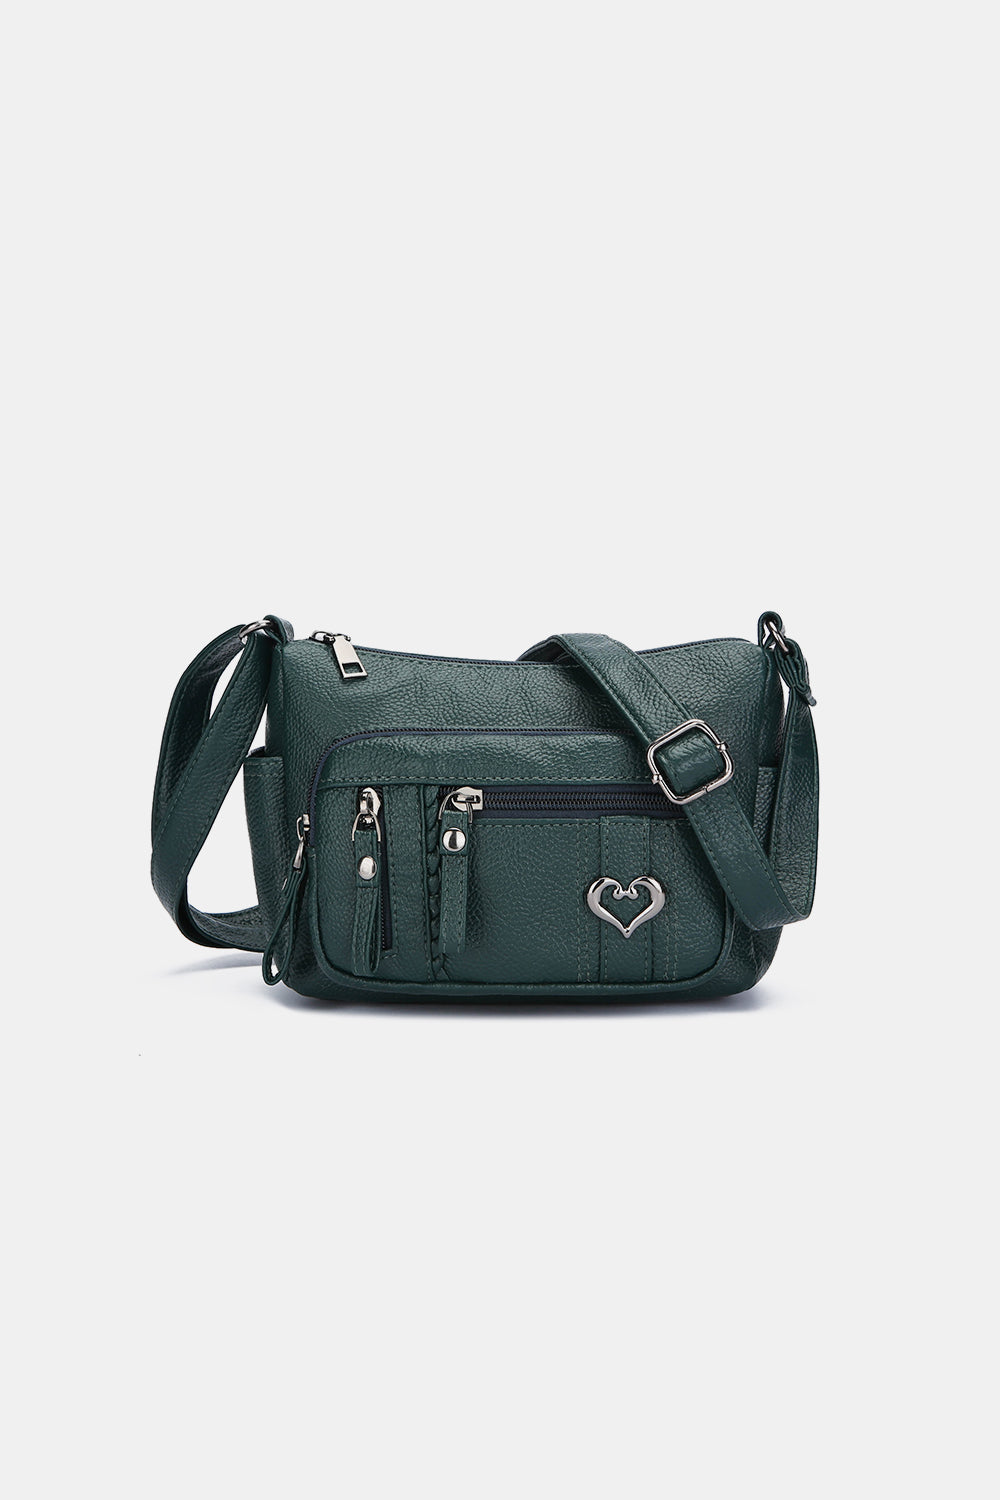 PU Leather Adjustable Strap Shoulder Bag Green One Size 